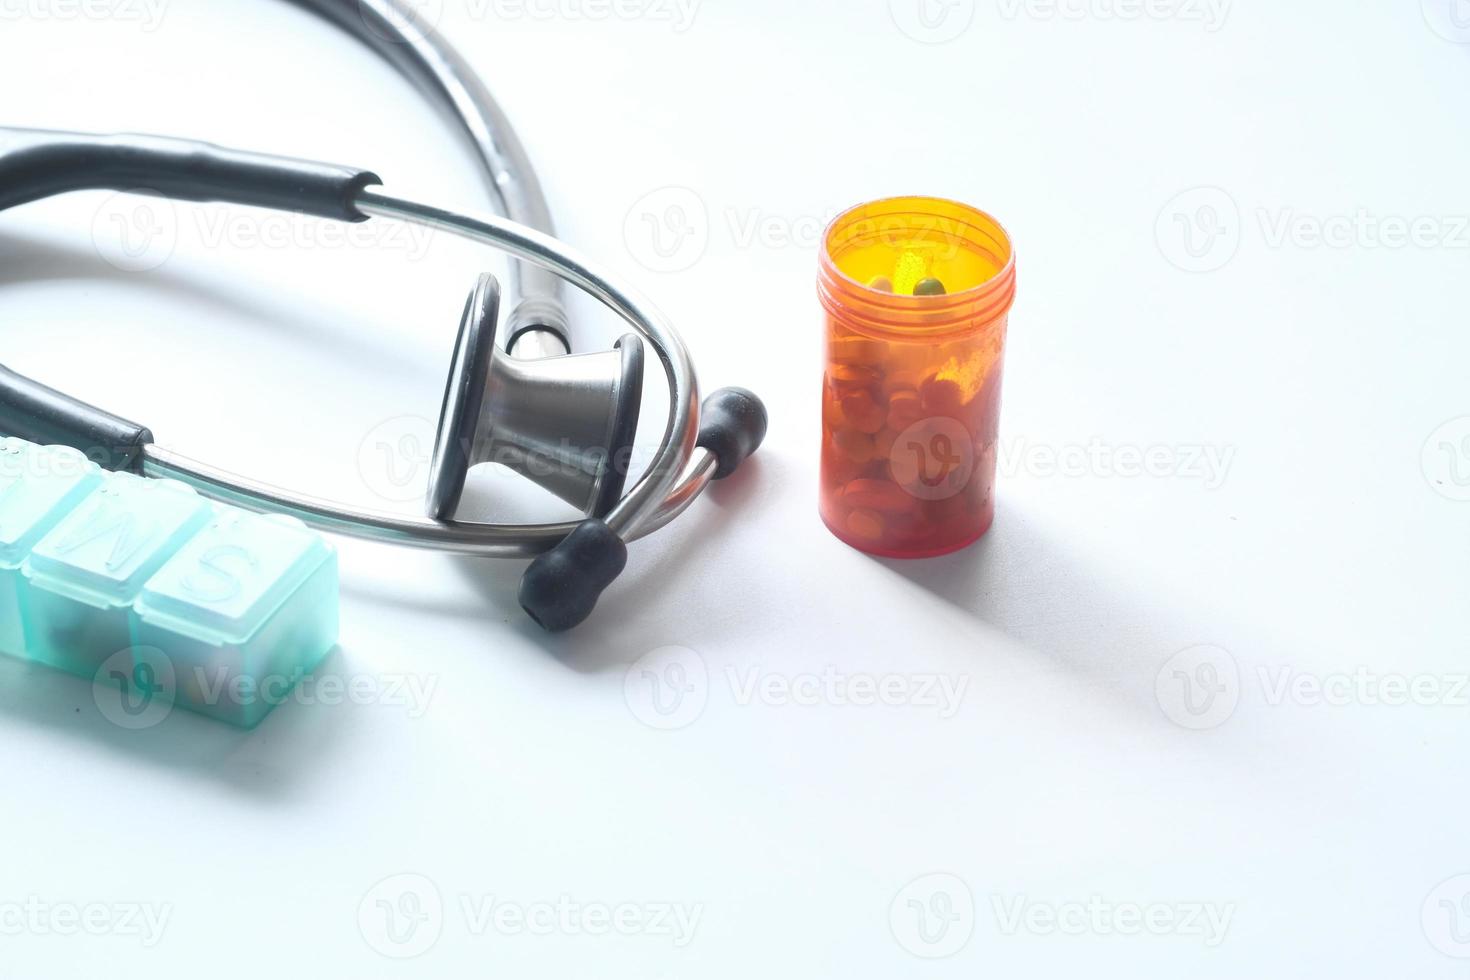 estetoscópio e recipiente de comprimidos no fundo branco foto